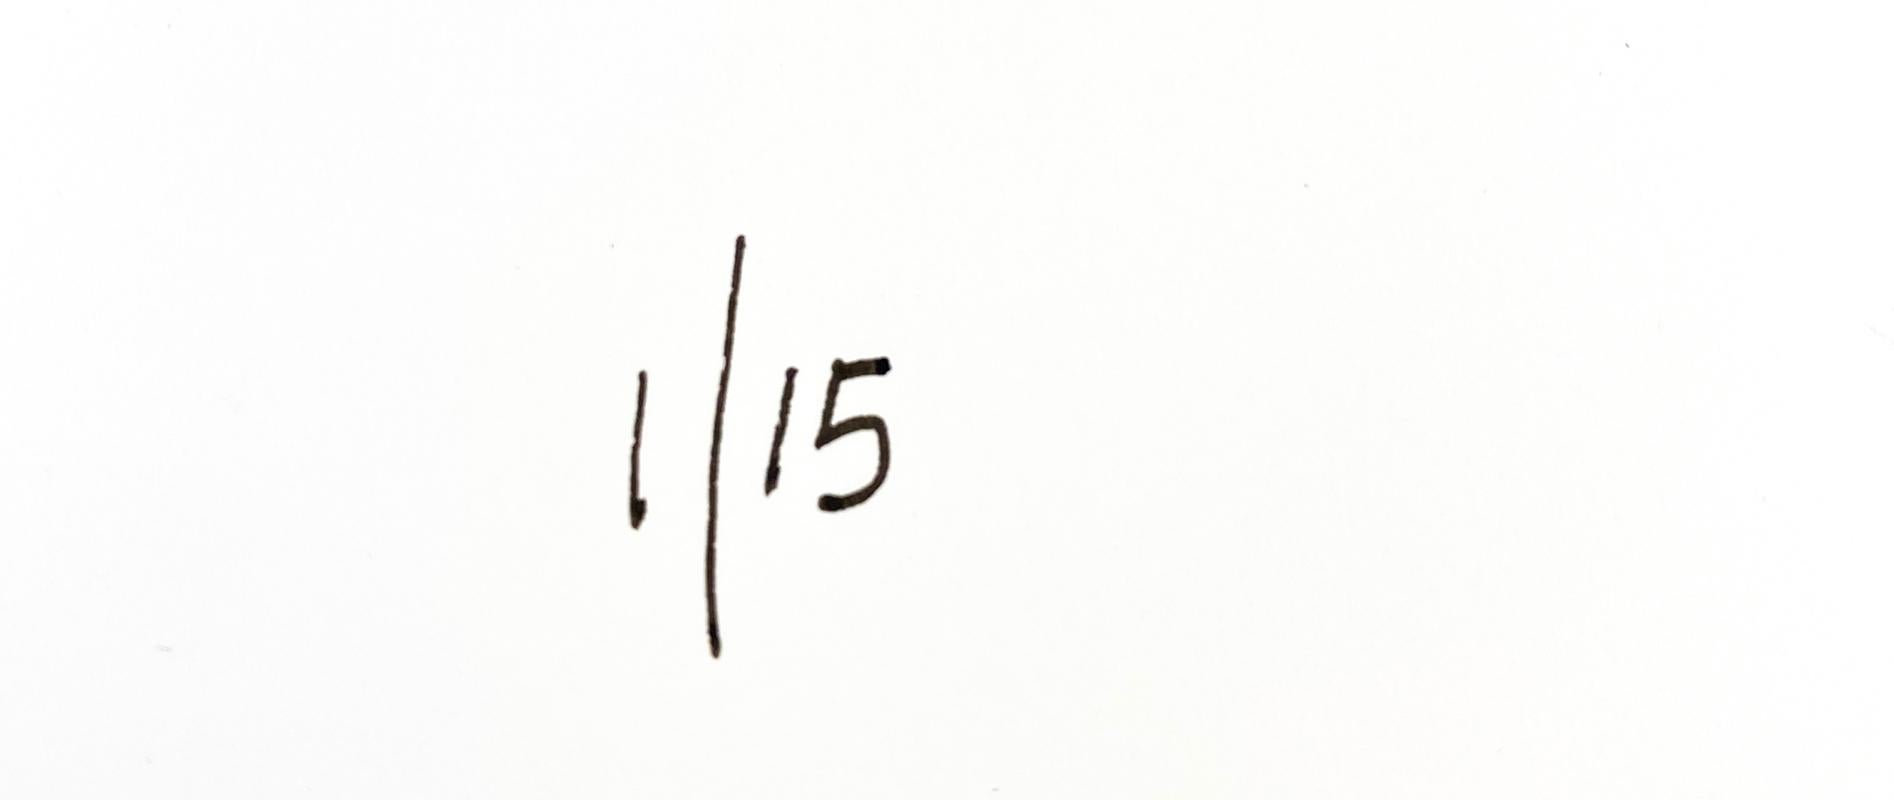 Kirsche Kate  - Handsignierte limitierte Auflage - Pop Art - Kate Moss

Archivalischer Pigmentdruck 

Dieses Stück ist eine moderne Neuauflage des Supermodels Kate Moss.

BATÍK ist ein in London ansässiger zeitgenössischer Pop-Art-Bildschöpfer und